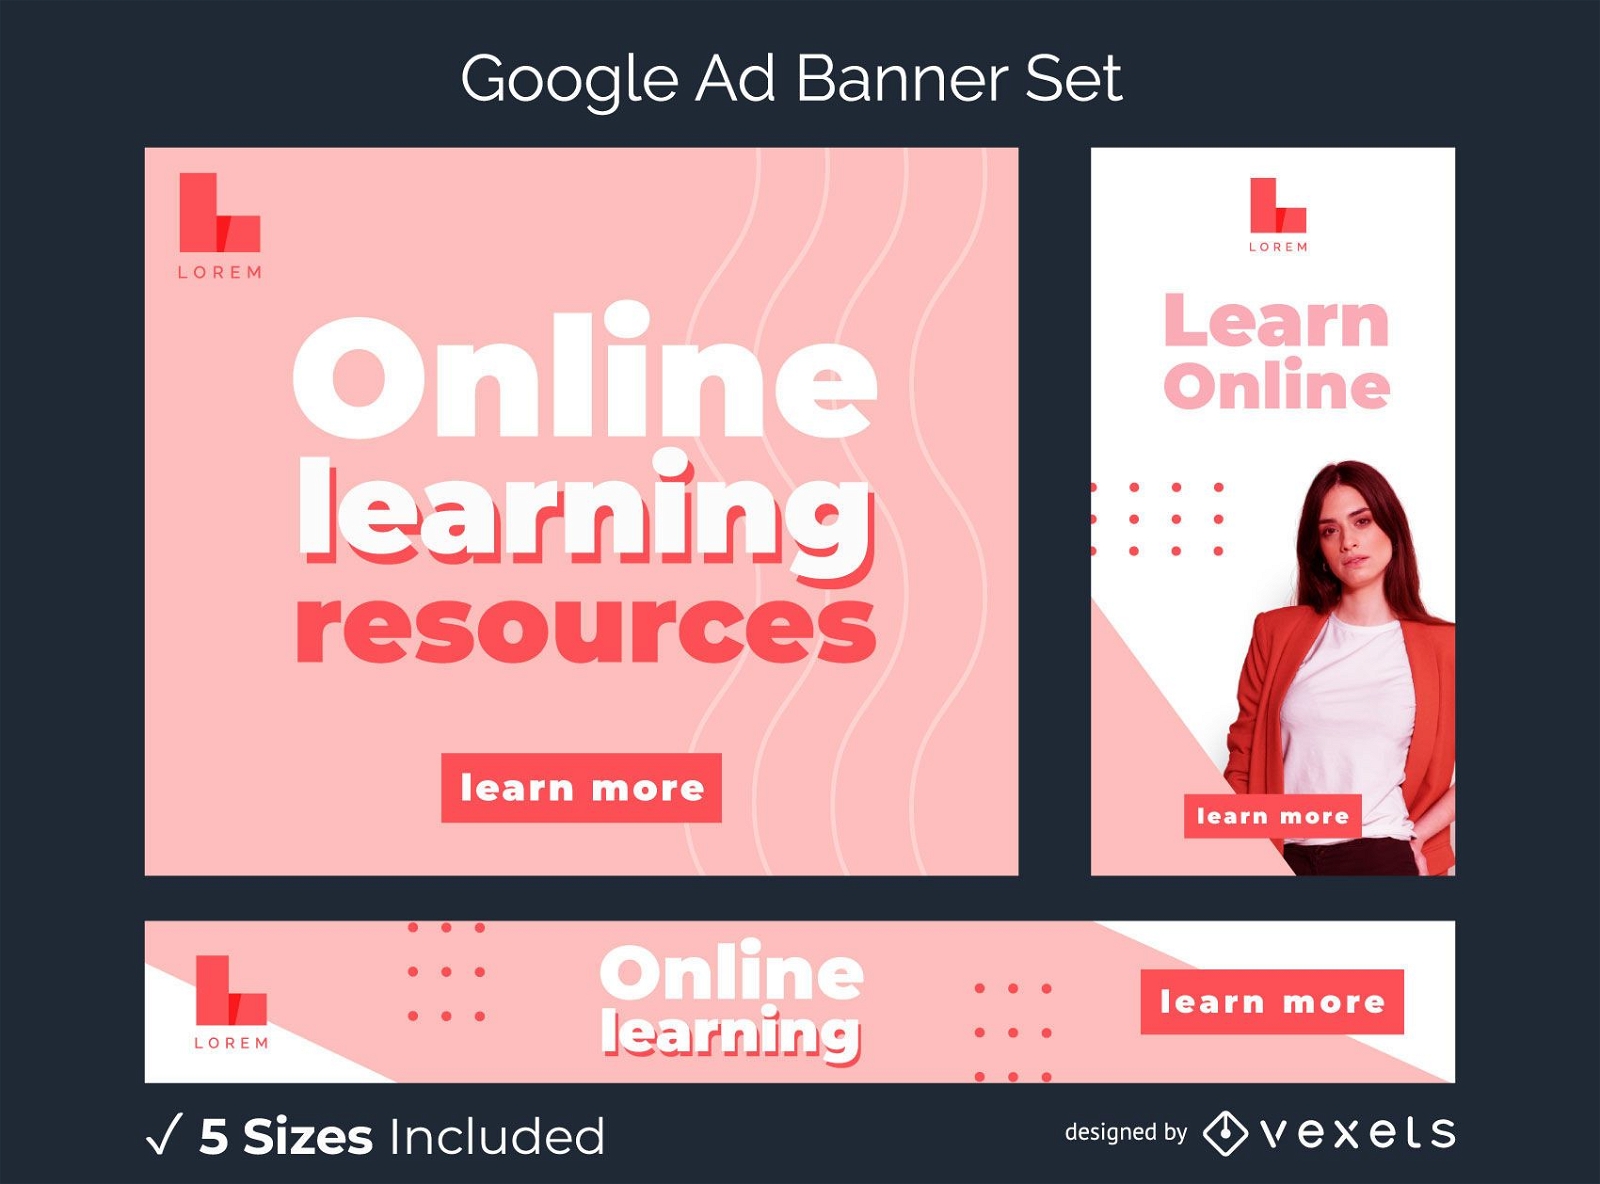 Paquete de banners publicitarios de Google Learn Online